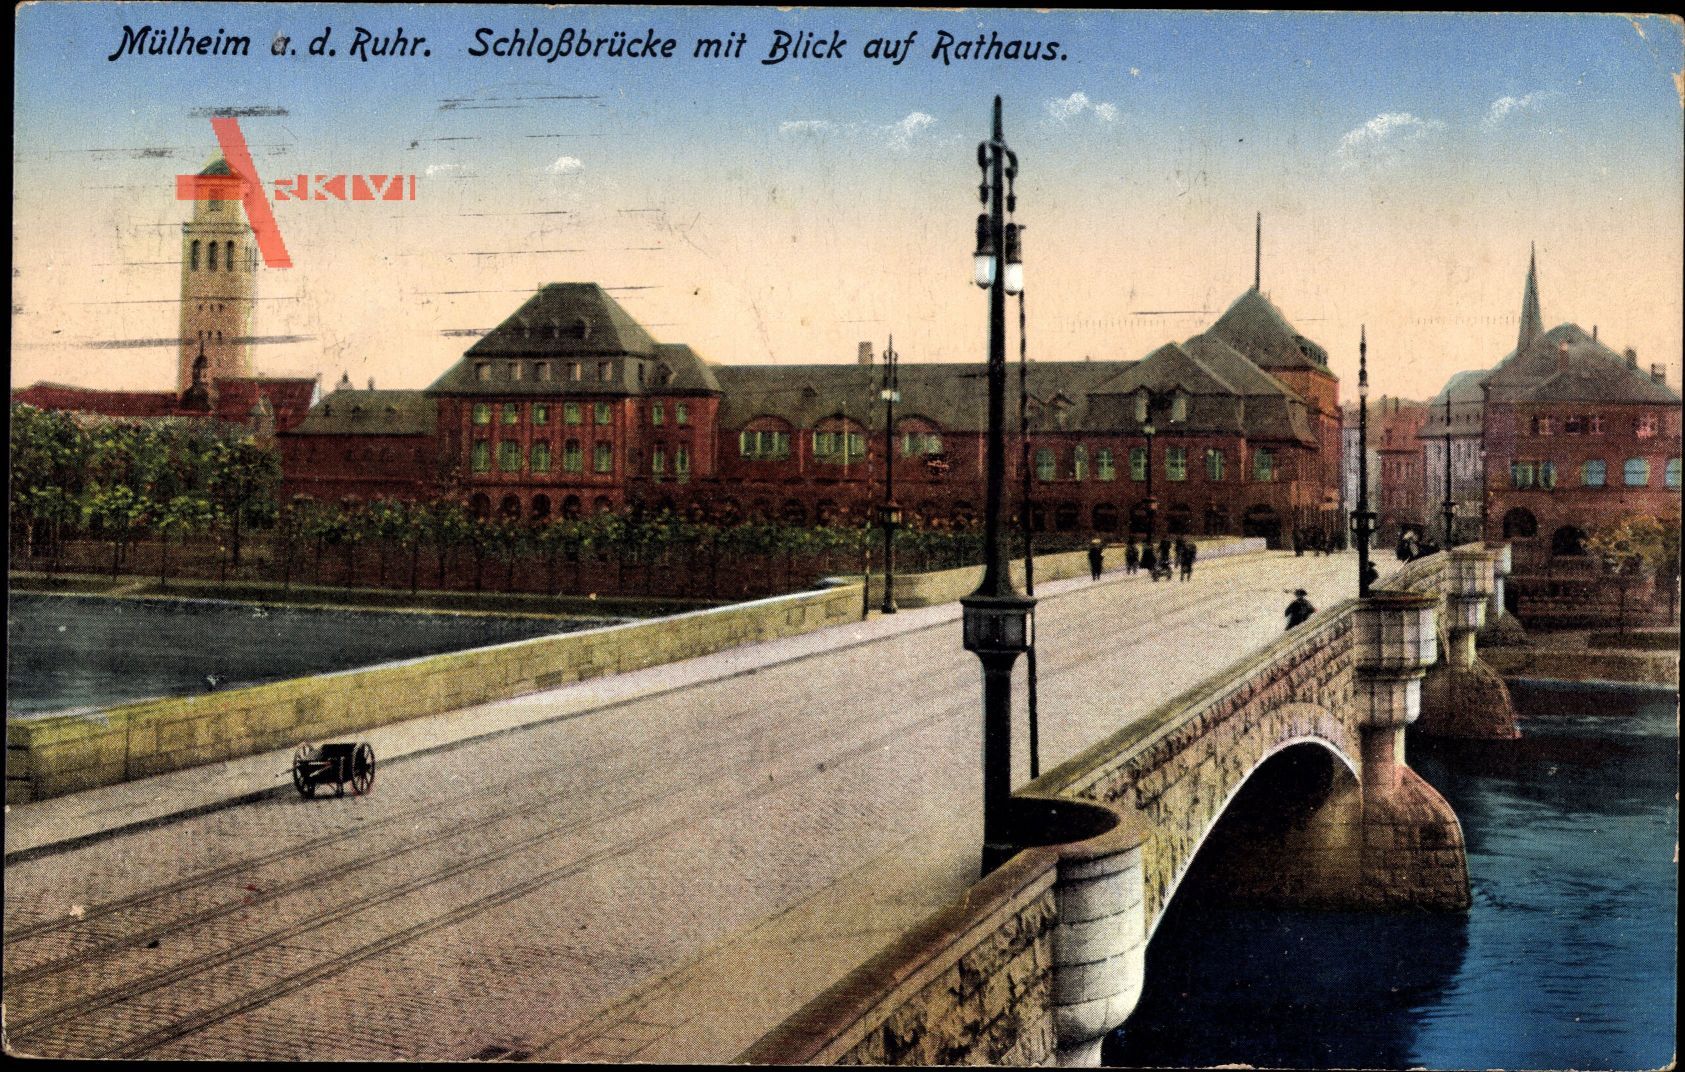 Mülheim an der Ruhr in Nordrhein Westfalen, Schlossbrücke mit Rathaus